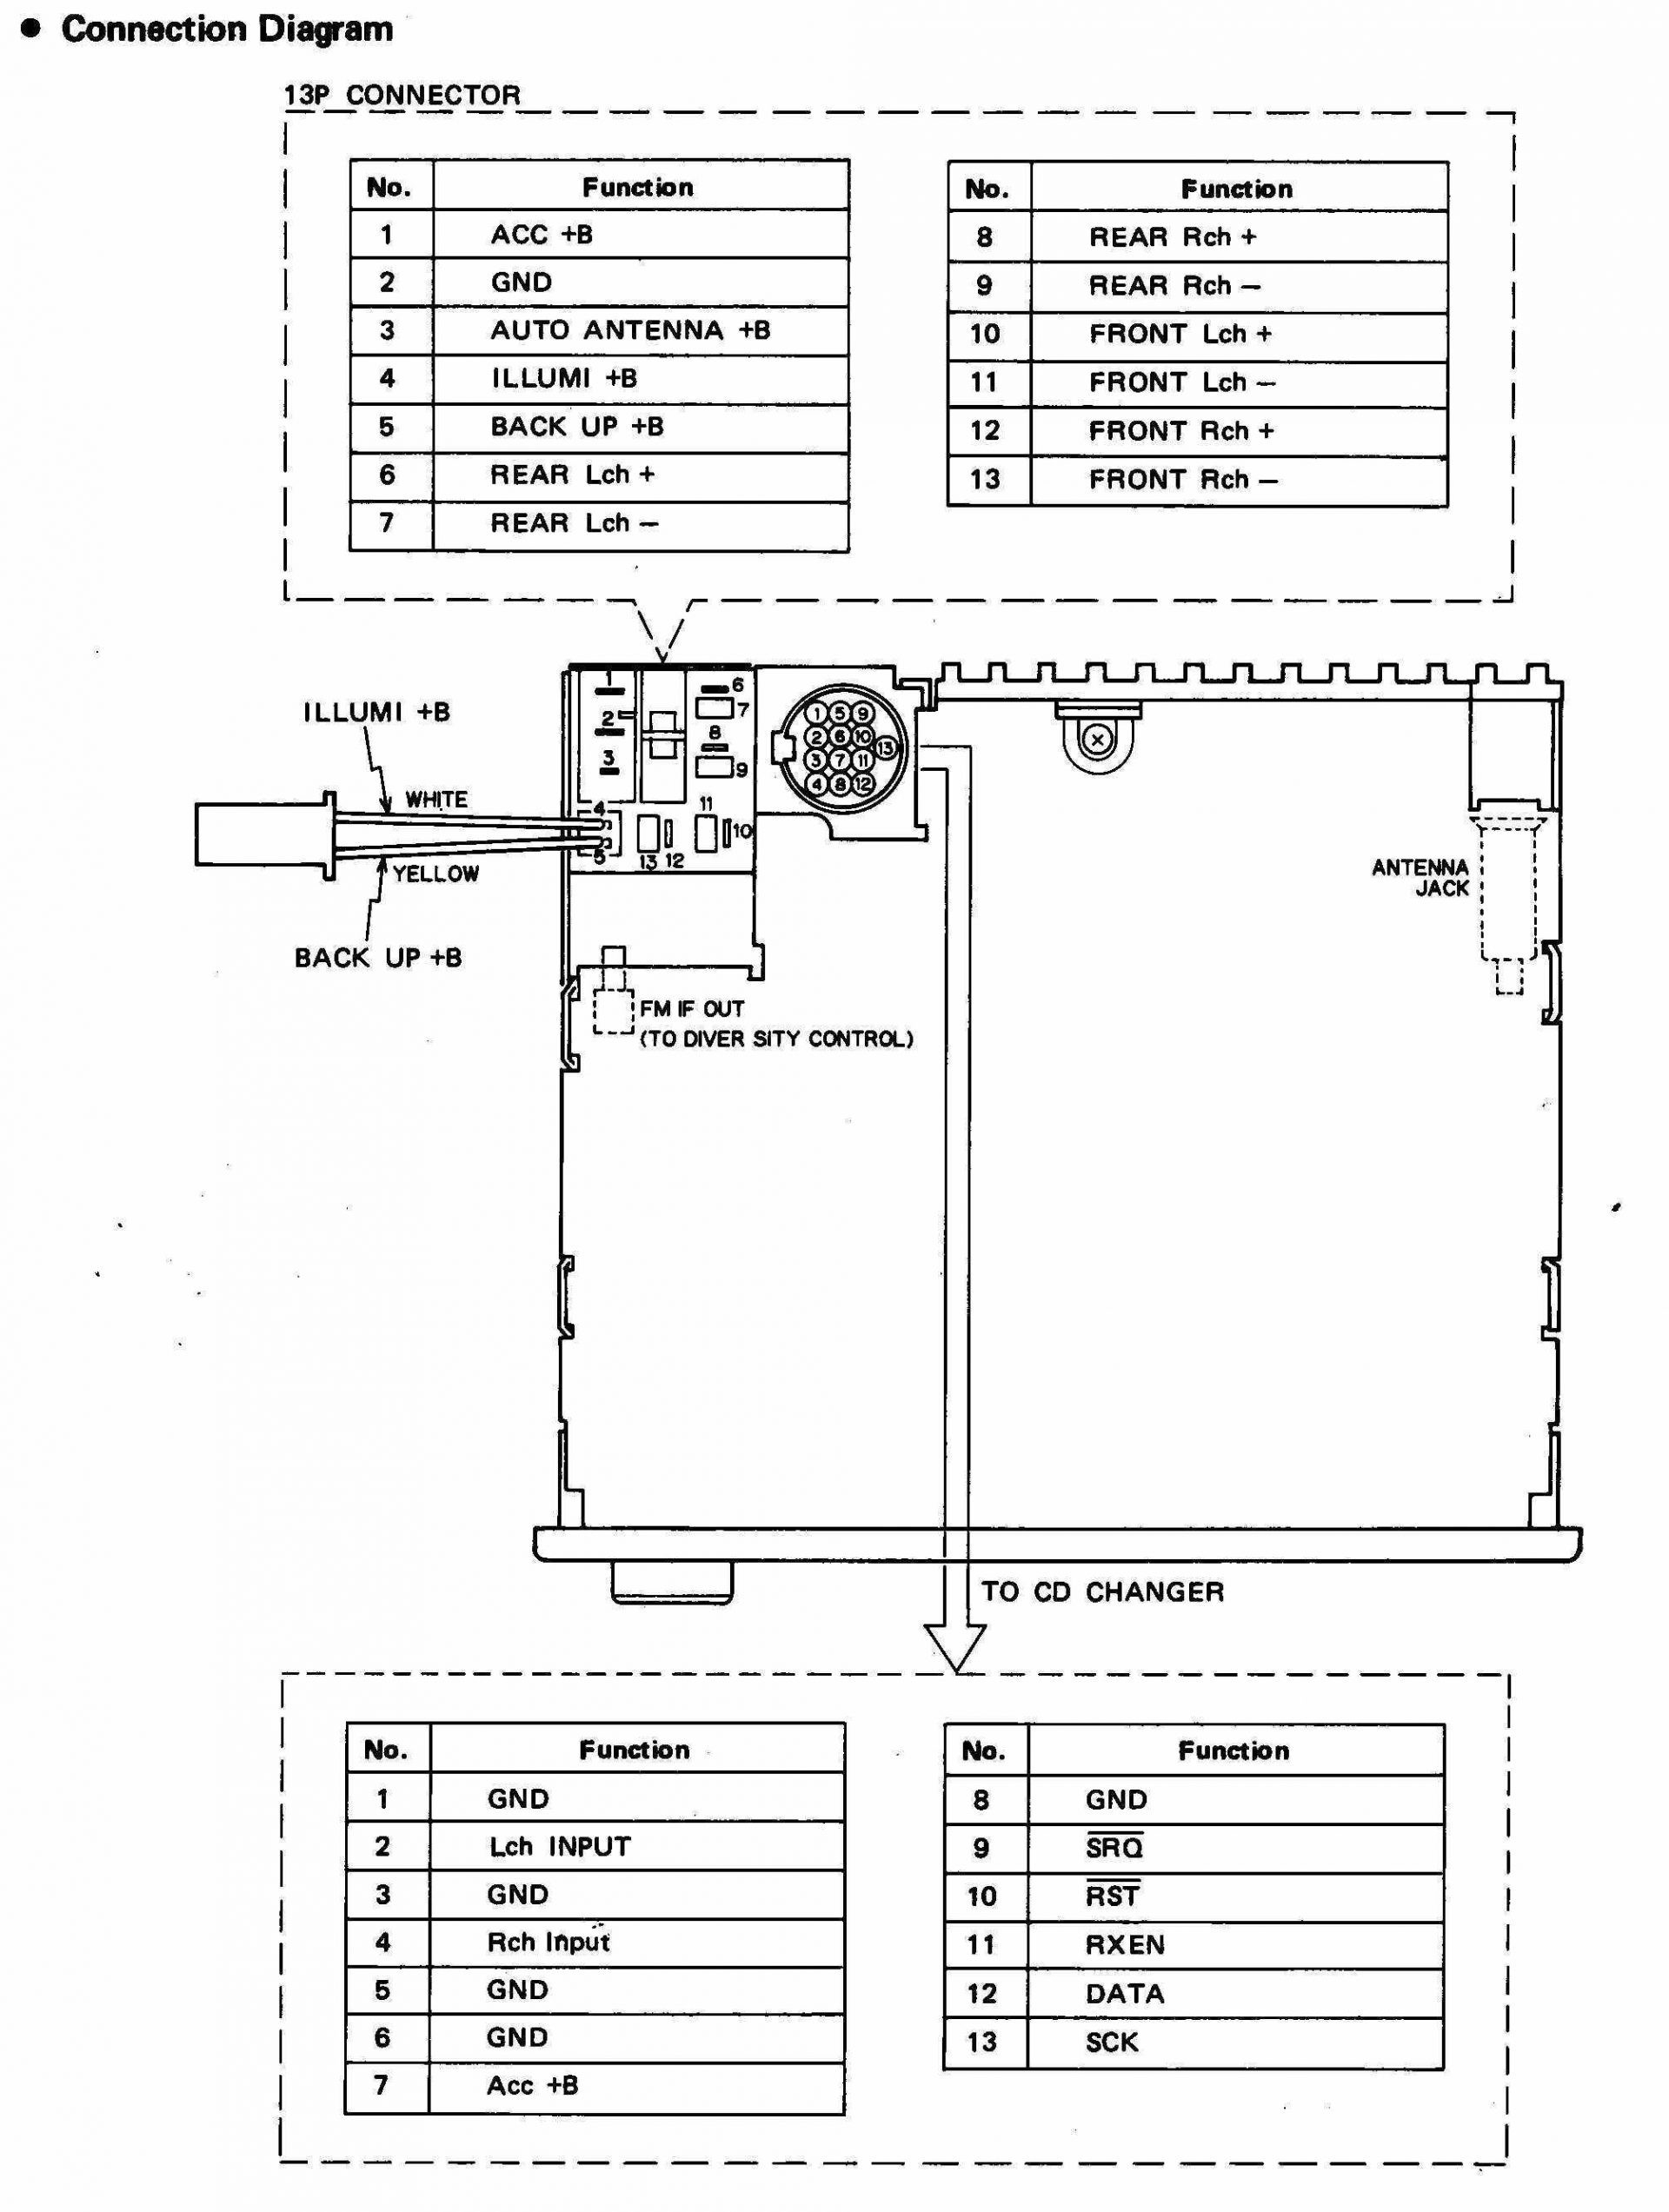 Wiring Diagram For Pioneer Avh X2800Bs | Wiring Diagram - Pioneer Avh-X2800Bs Wiring Harness Diagram